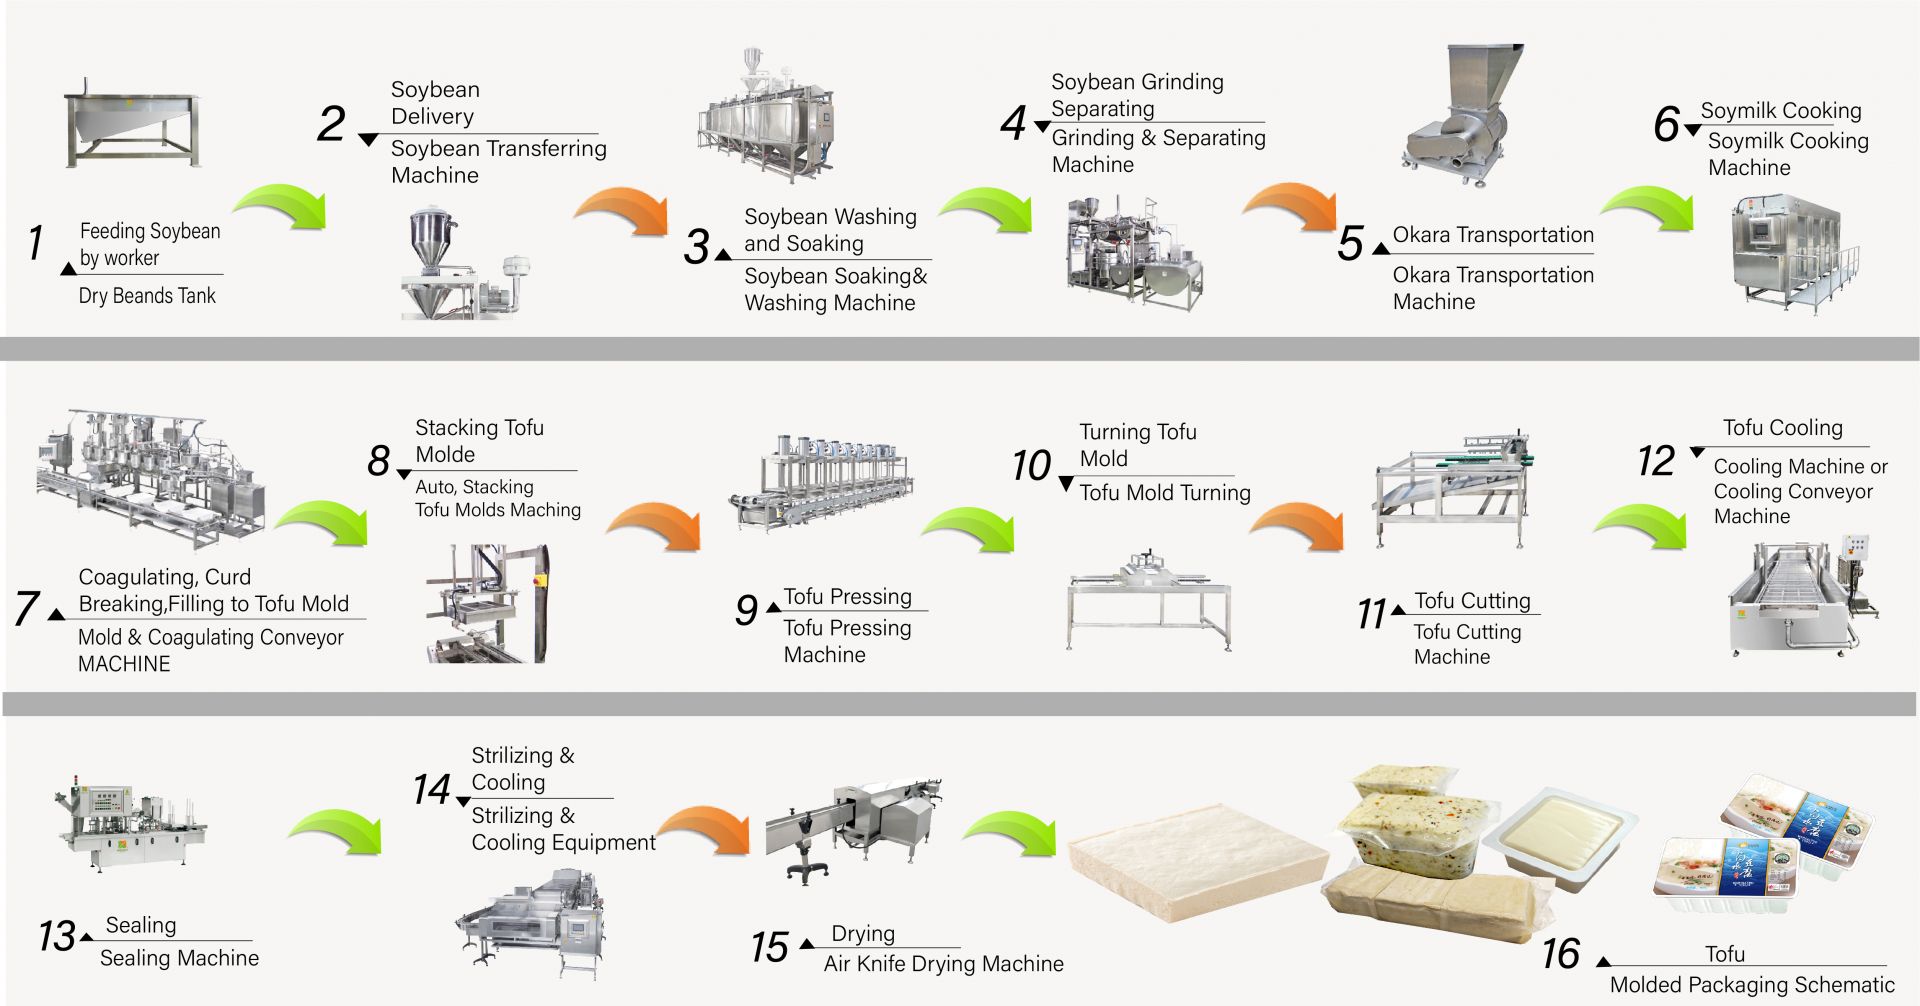 Hur man gör tofu, produktion av tofu, Tofu-tillverkning, Tofu-tillverkningsprocess, tofu-tillverkning, tofu-tillverkningsprocess, tofu-process, tofu-bearbetningsmetod, Tofu-bearbetningsprocess, tofu-produktion, tofuproduktionsflödesschema, tofu produktionsprocess, Tofu produktionsprocess, automatisk tofu-maskin, Automatisk tofu-tillverkningsmaskin, Kommersiell tofu-maskin, Enkel tofu-tillverkare, Friterad tofu-maskin, Industriell tofu-tillverkning, Sojamatsutrustning, sojamaskin, sojamjölk och tofu-tillverkningsmaskin, tofu-utrustning, tofu-fabrik, tofu-maskin, tofu-maskin till salu, tofu-maskintillverkare, tofu-maskintillverkare, tofu-maskinpris, tofu-maskineri, Tofu maskiner och utrustning, Tofu tillverkare, tofu tillverkningsmaskin, Tofu tillverkning, tofu tillverkningsutrustning, tofu tillverkningsmaskin, tofu tillverkningsmaskin pris, tofu tillverkare, Tofu tillverkning, tofu tillverkningsutrustning, Tofufabrik, tofu produktionsanläggning, Tofu produktionsutrustning, Tofu produktionsfabrik, tofu produktionslinje, Tofu produktionslinje pris, tofutillverkare, Vegansk köttmaskin, Vegansk köttproduktionslinje, Grönsakstofu maskiner och utrustning